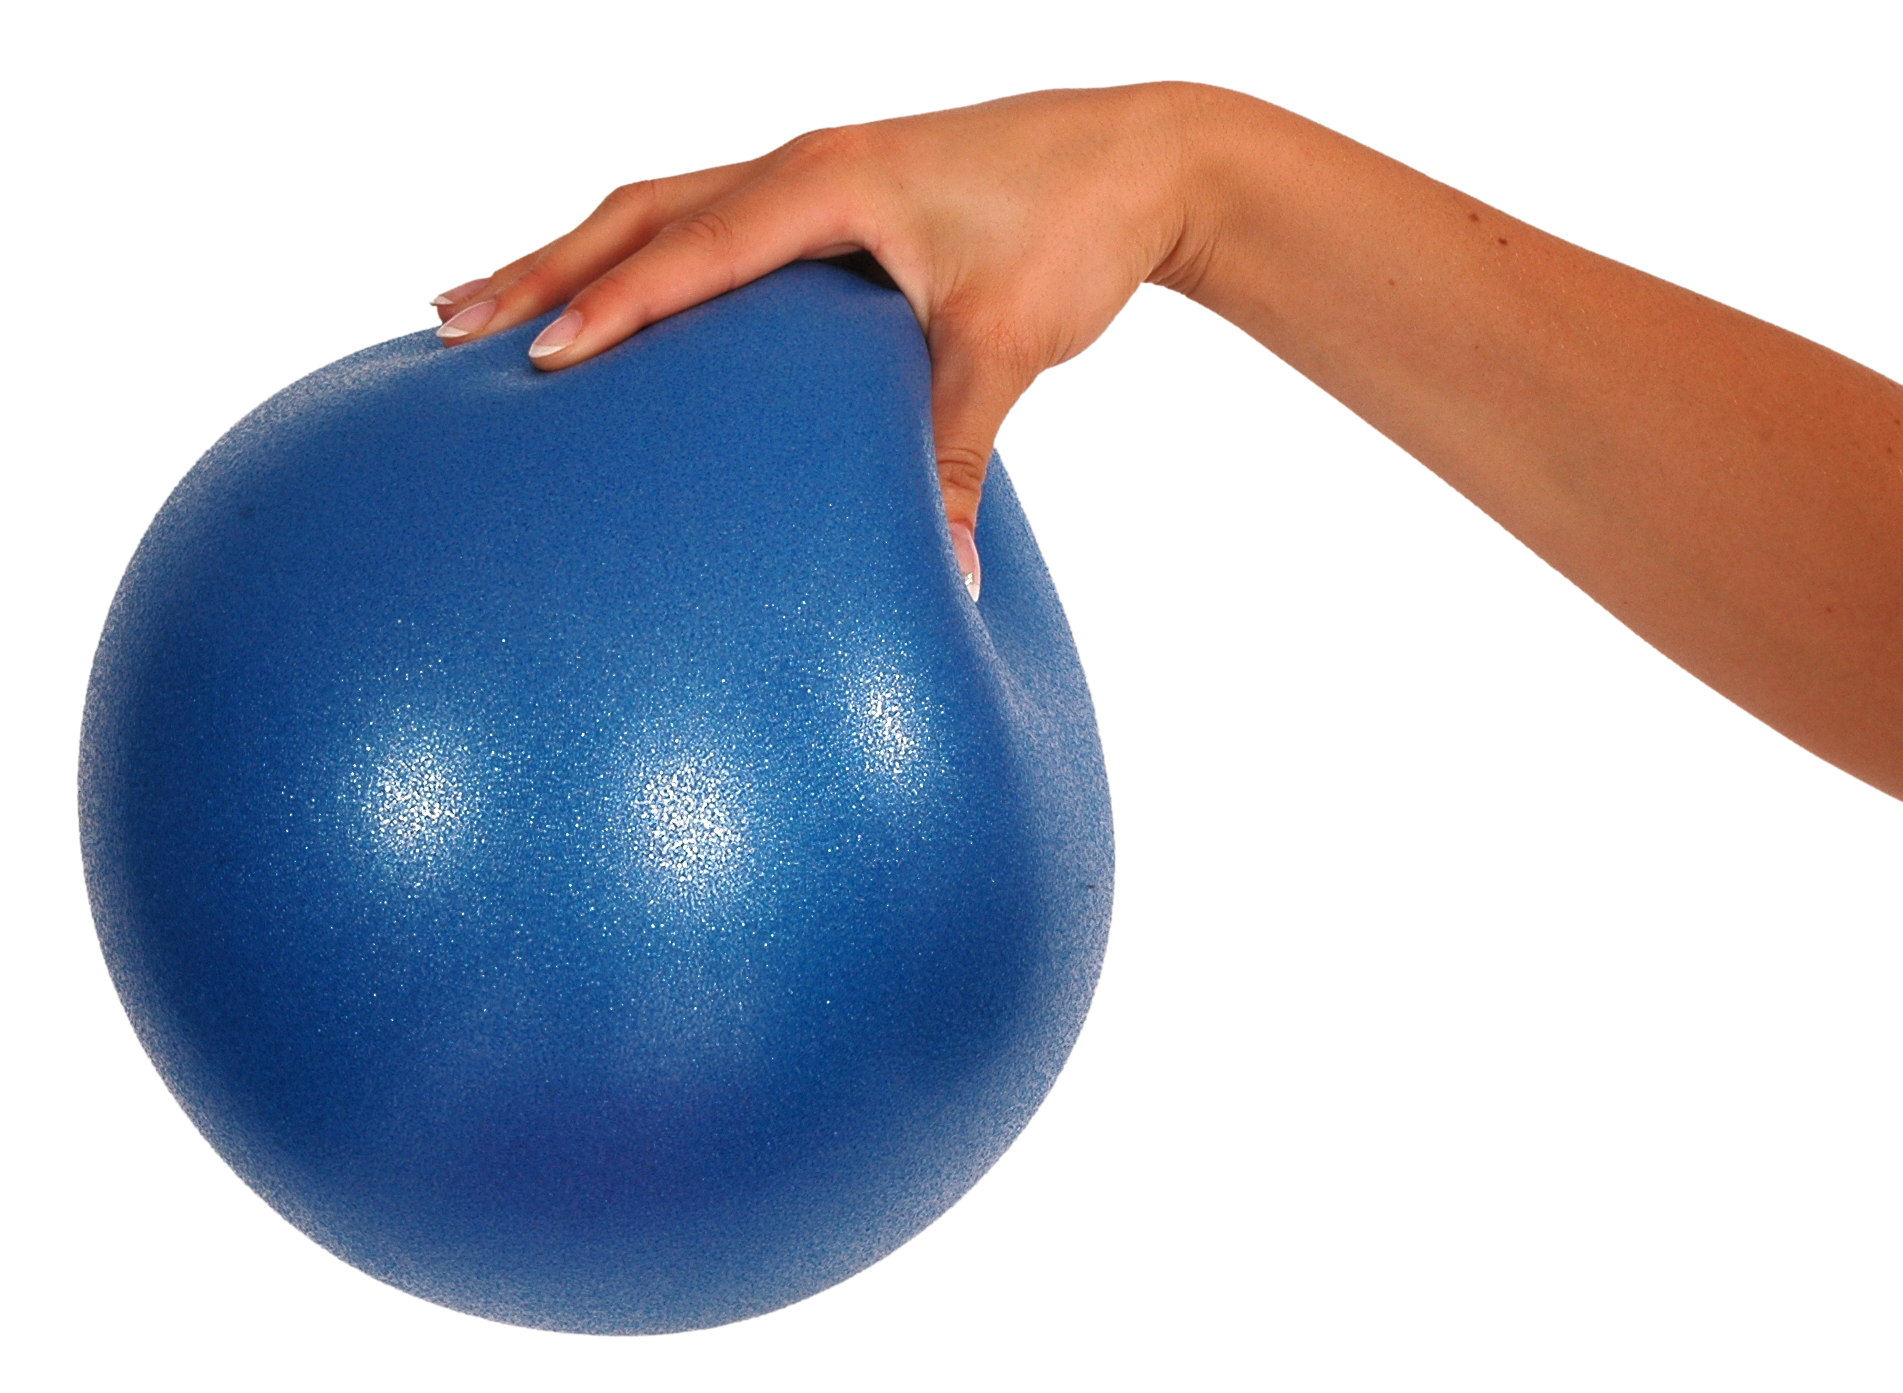 Мяч Decathlon/Pilates. Медбол малый мяч Decathlon 900 г синий d=114 мм для пилатеса Pilates weighted Ball 900g. Мяч для пилатеса plb25-3 красный d=25 см. Мяч гимнастический д.65 l 0575 b, Ортосила.